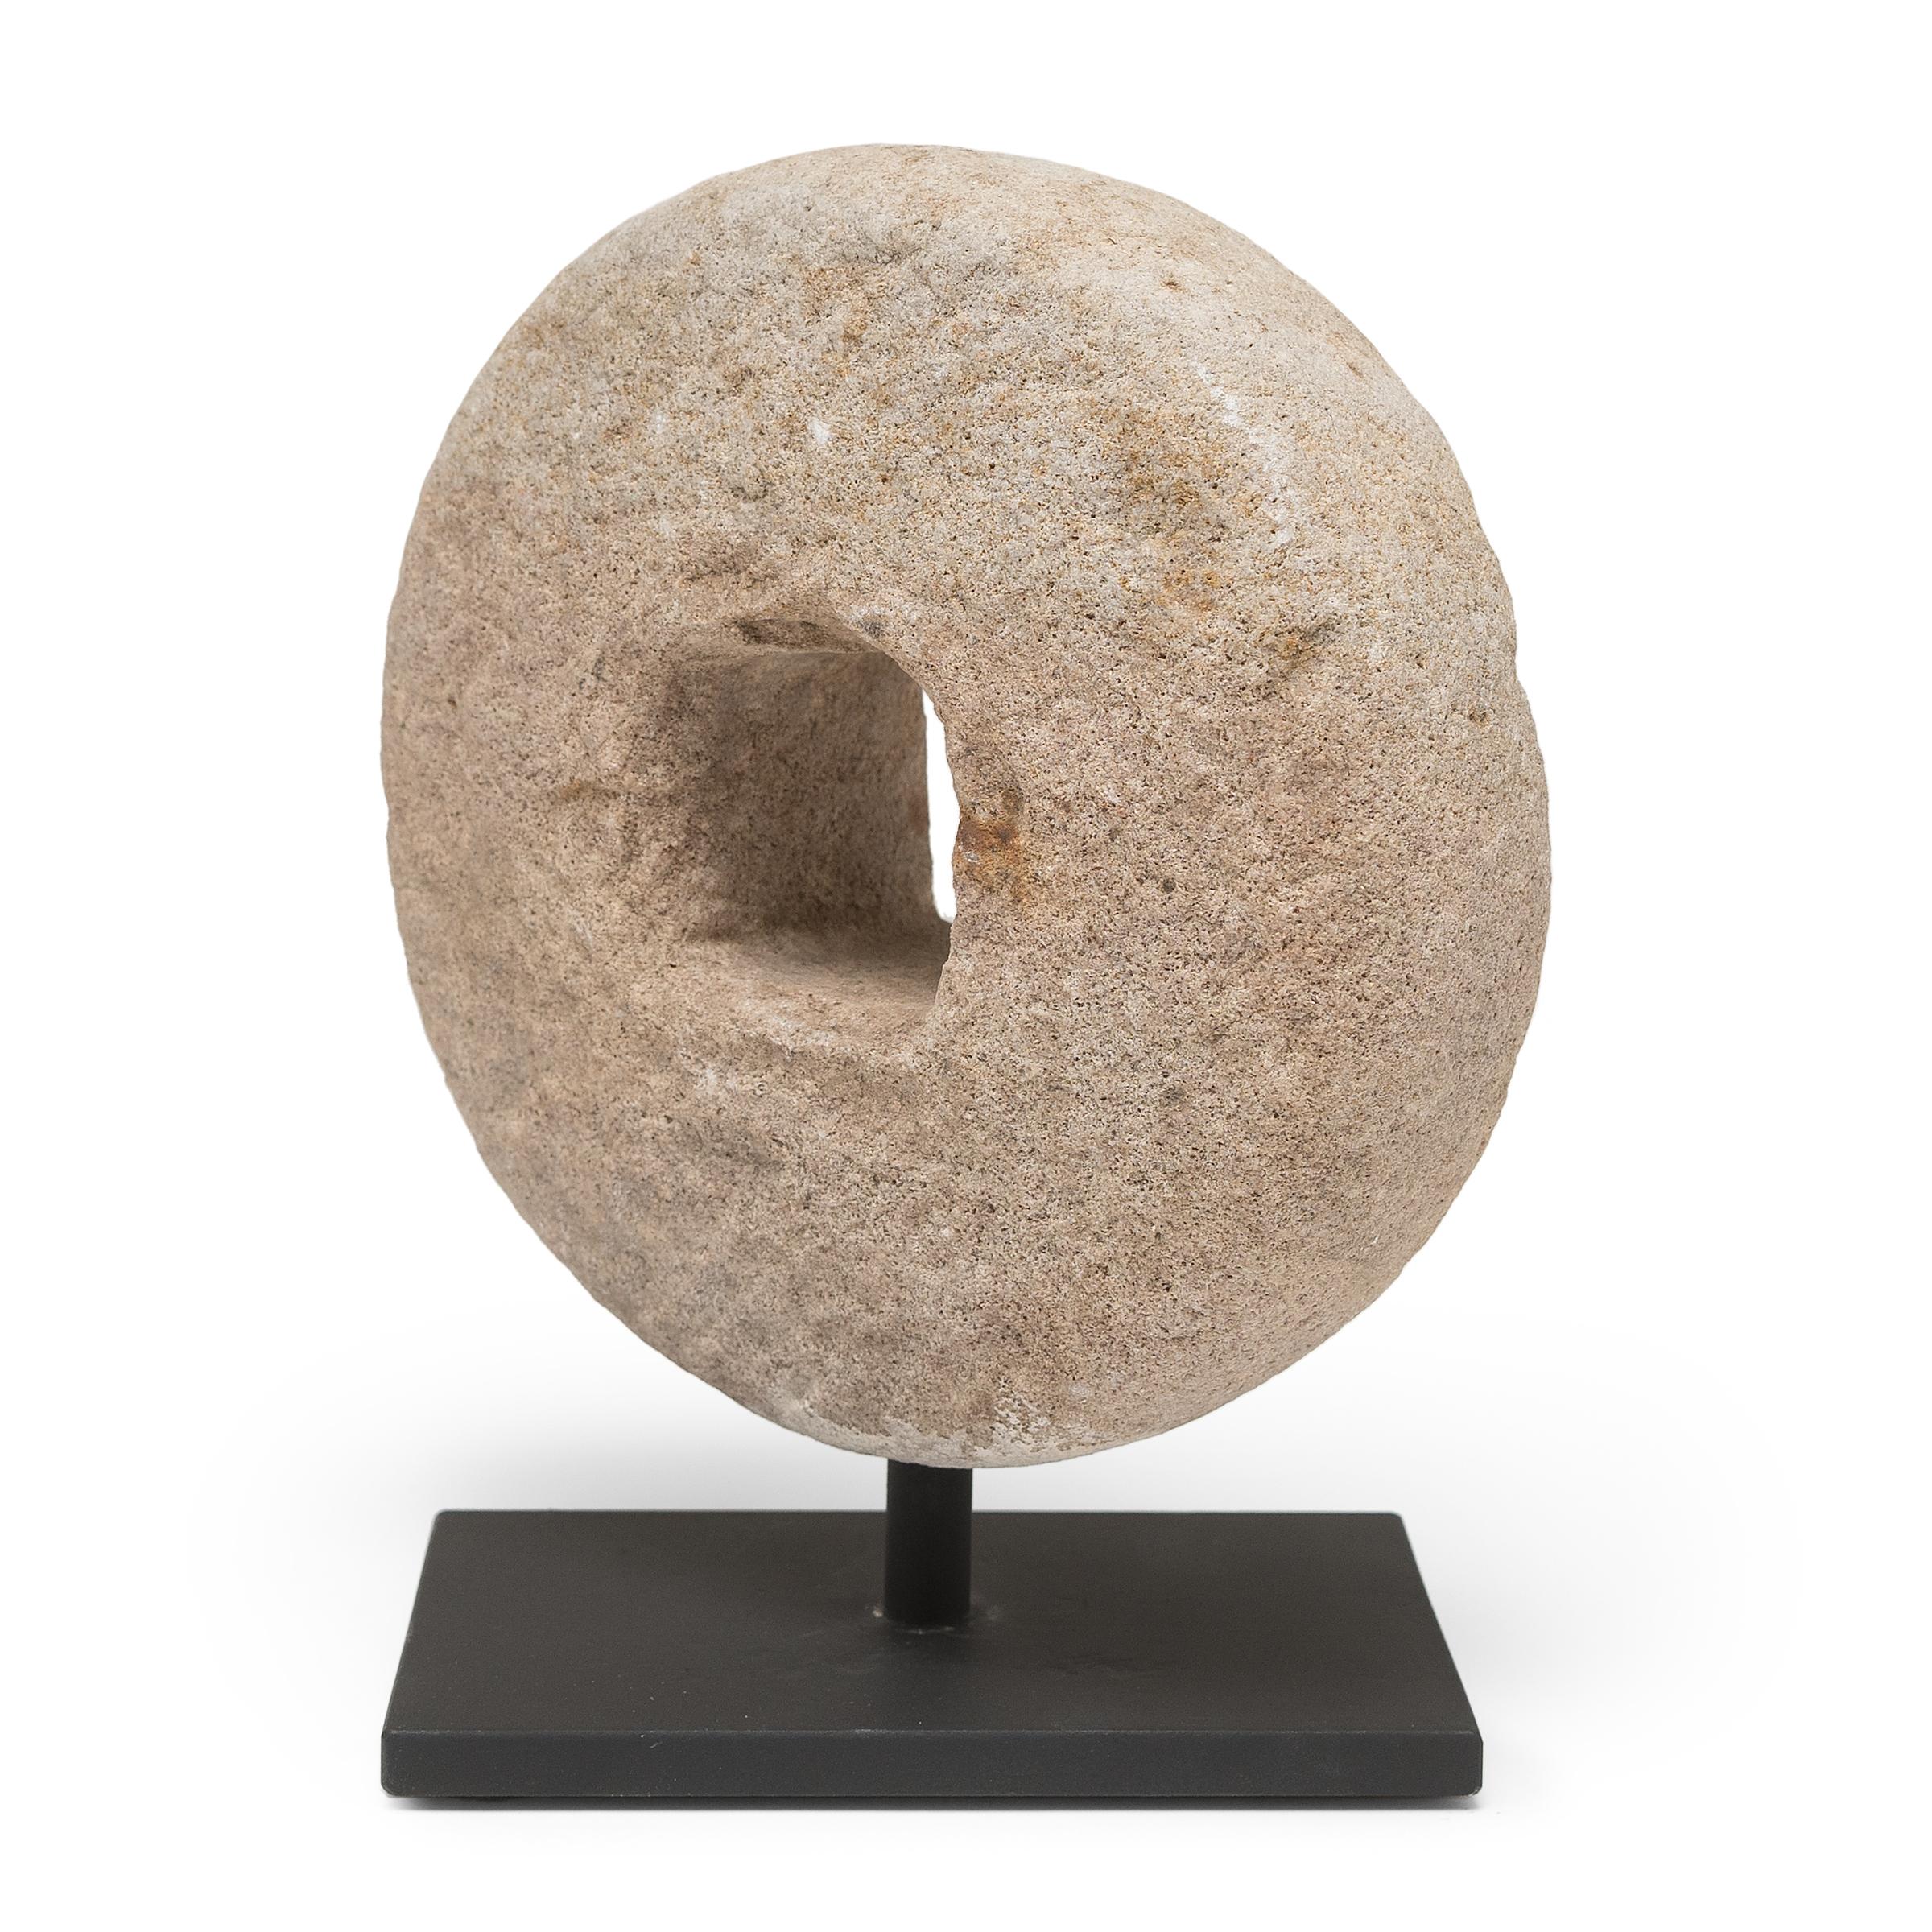 Ce disque rond en pierre était à l'origine une roue de battage du début du XXe siècle. Fixée à un axe en bois qui traversait le centre, la pierre était roulée sur les tiges de blé pour séparer les grains, tirée soit par un homme, soit par un bœuf.